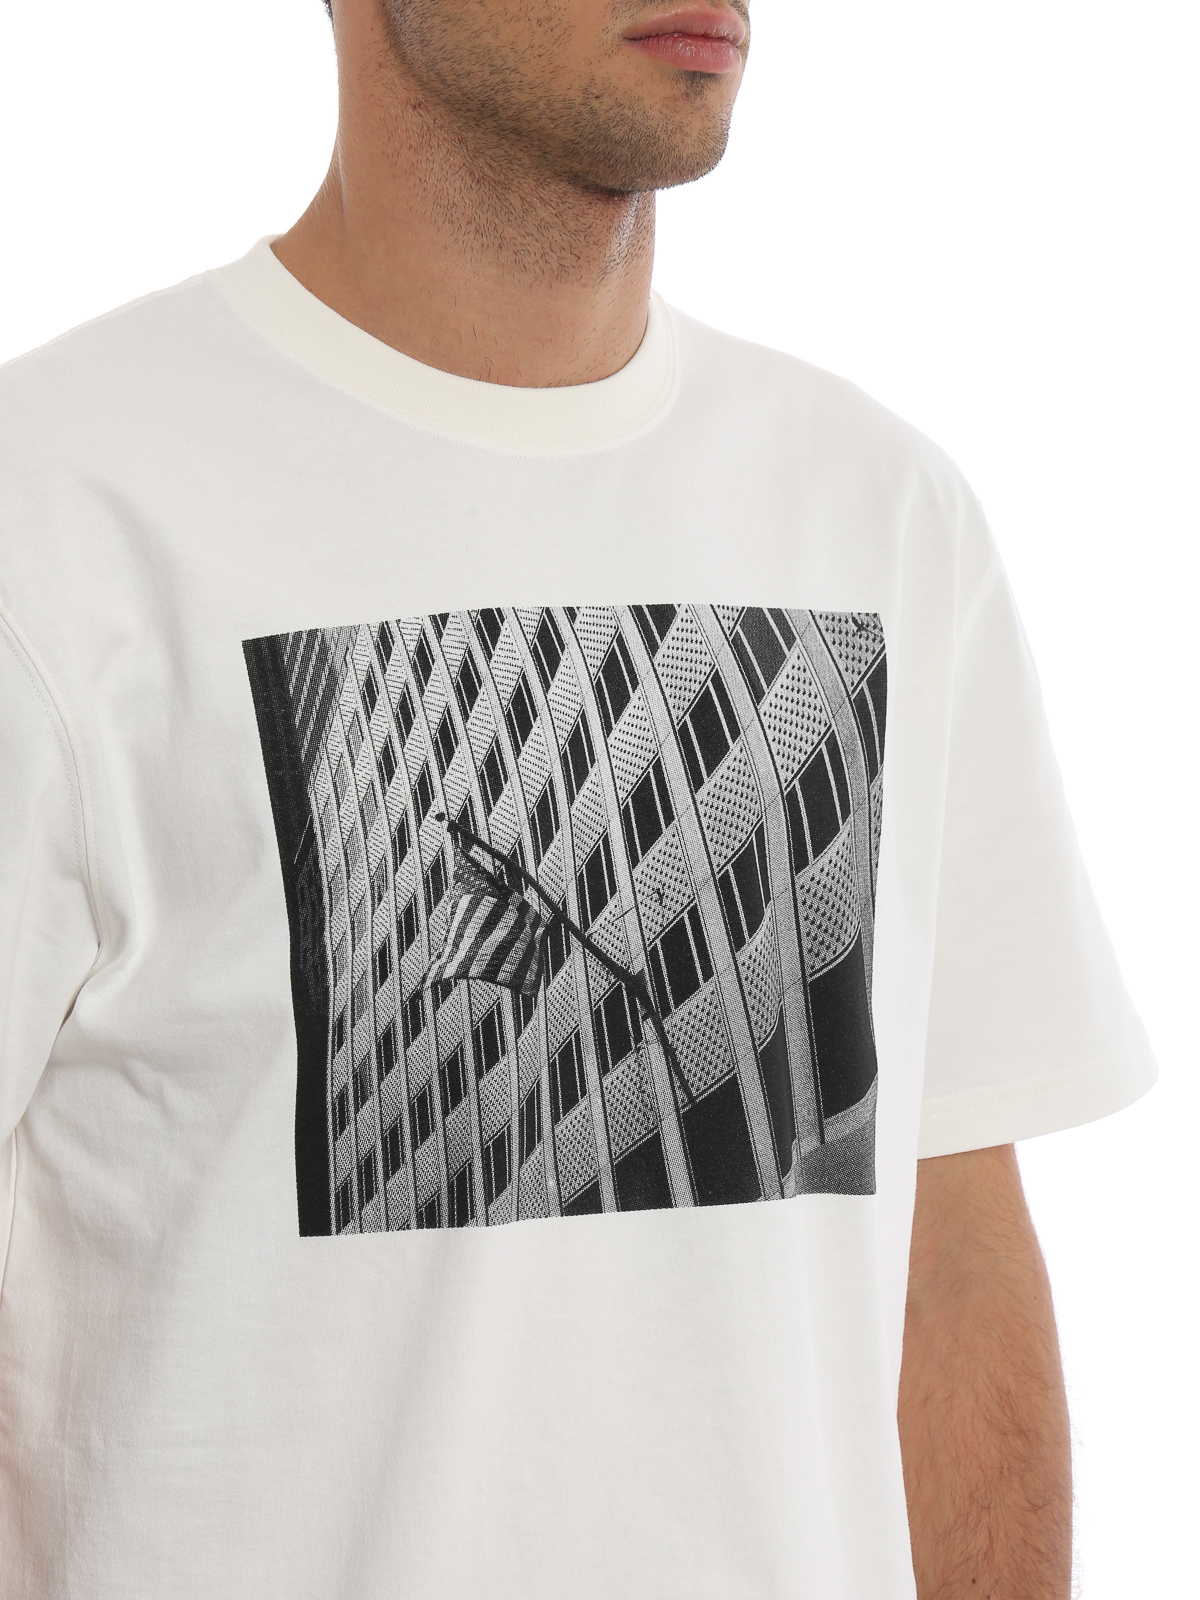 Vrijgevigheid Toevoeging schokkend Tシャツ Calvin Klein - Tシャツ - Andy Warhol - 83MWTC24C133101